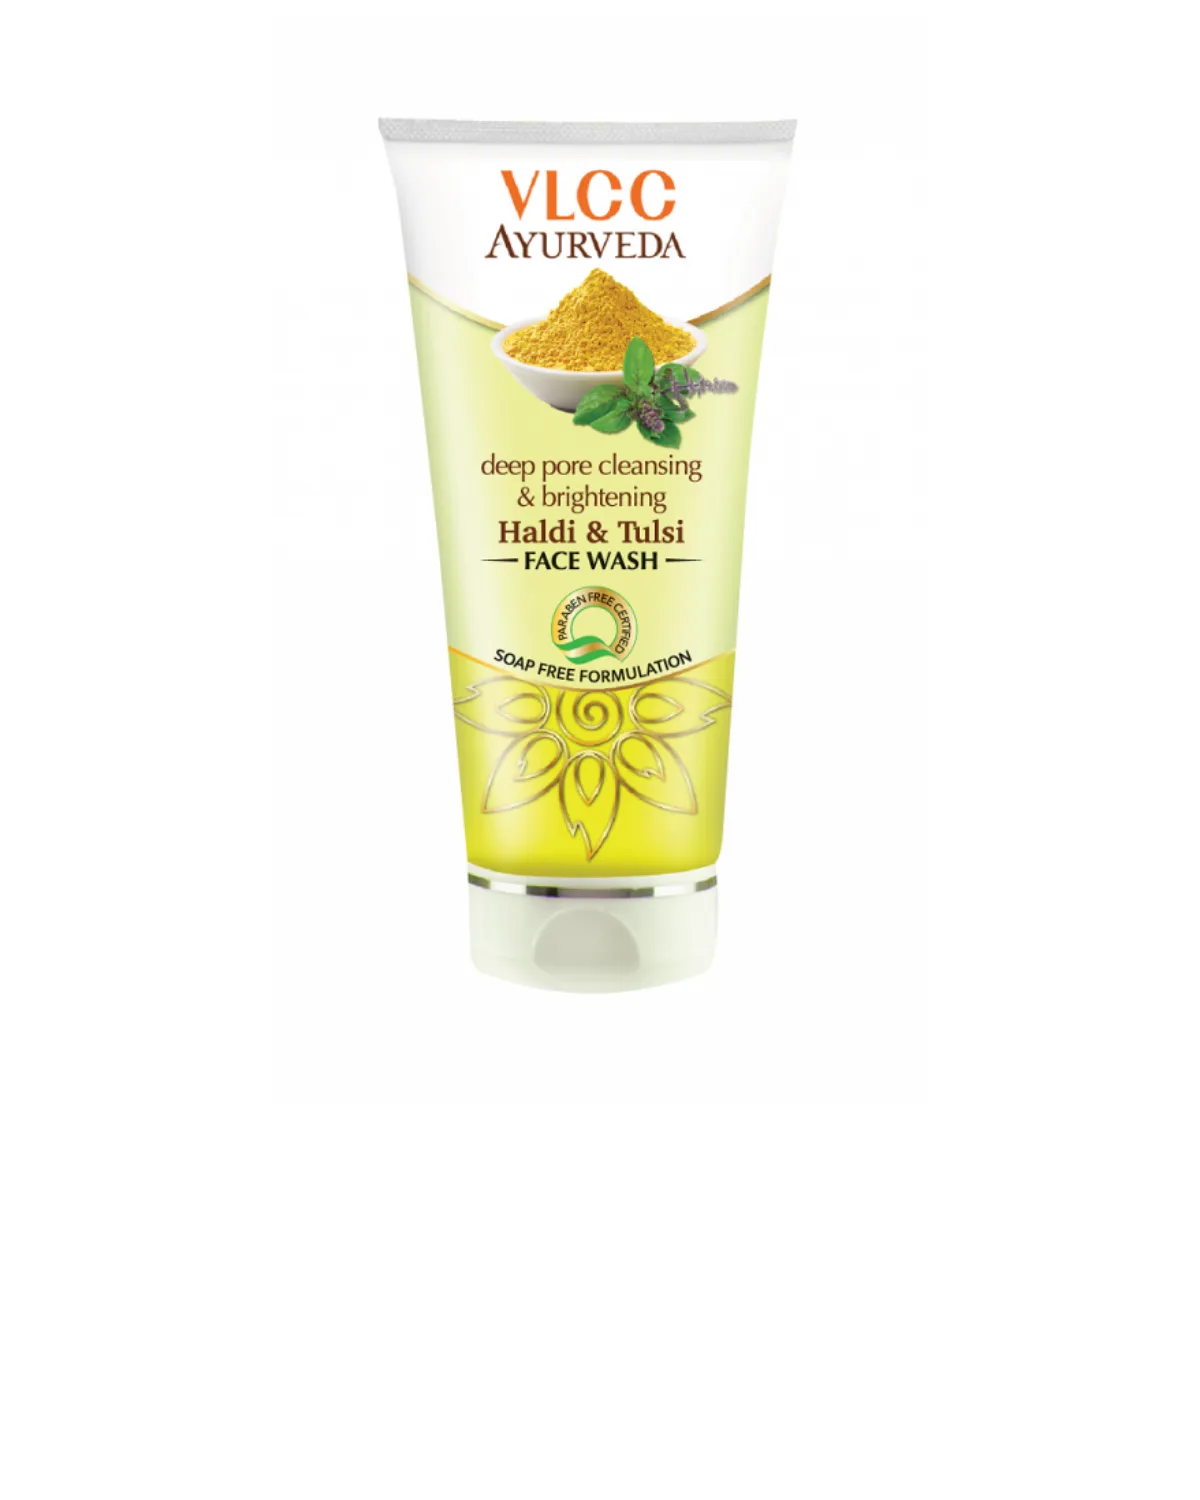 Гель для умывания – глубокое очищение пор и осветление кожи лица (50ml) vlcc f0366 vlcc (Индия)#1